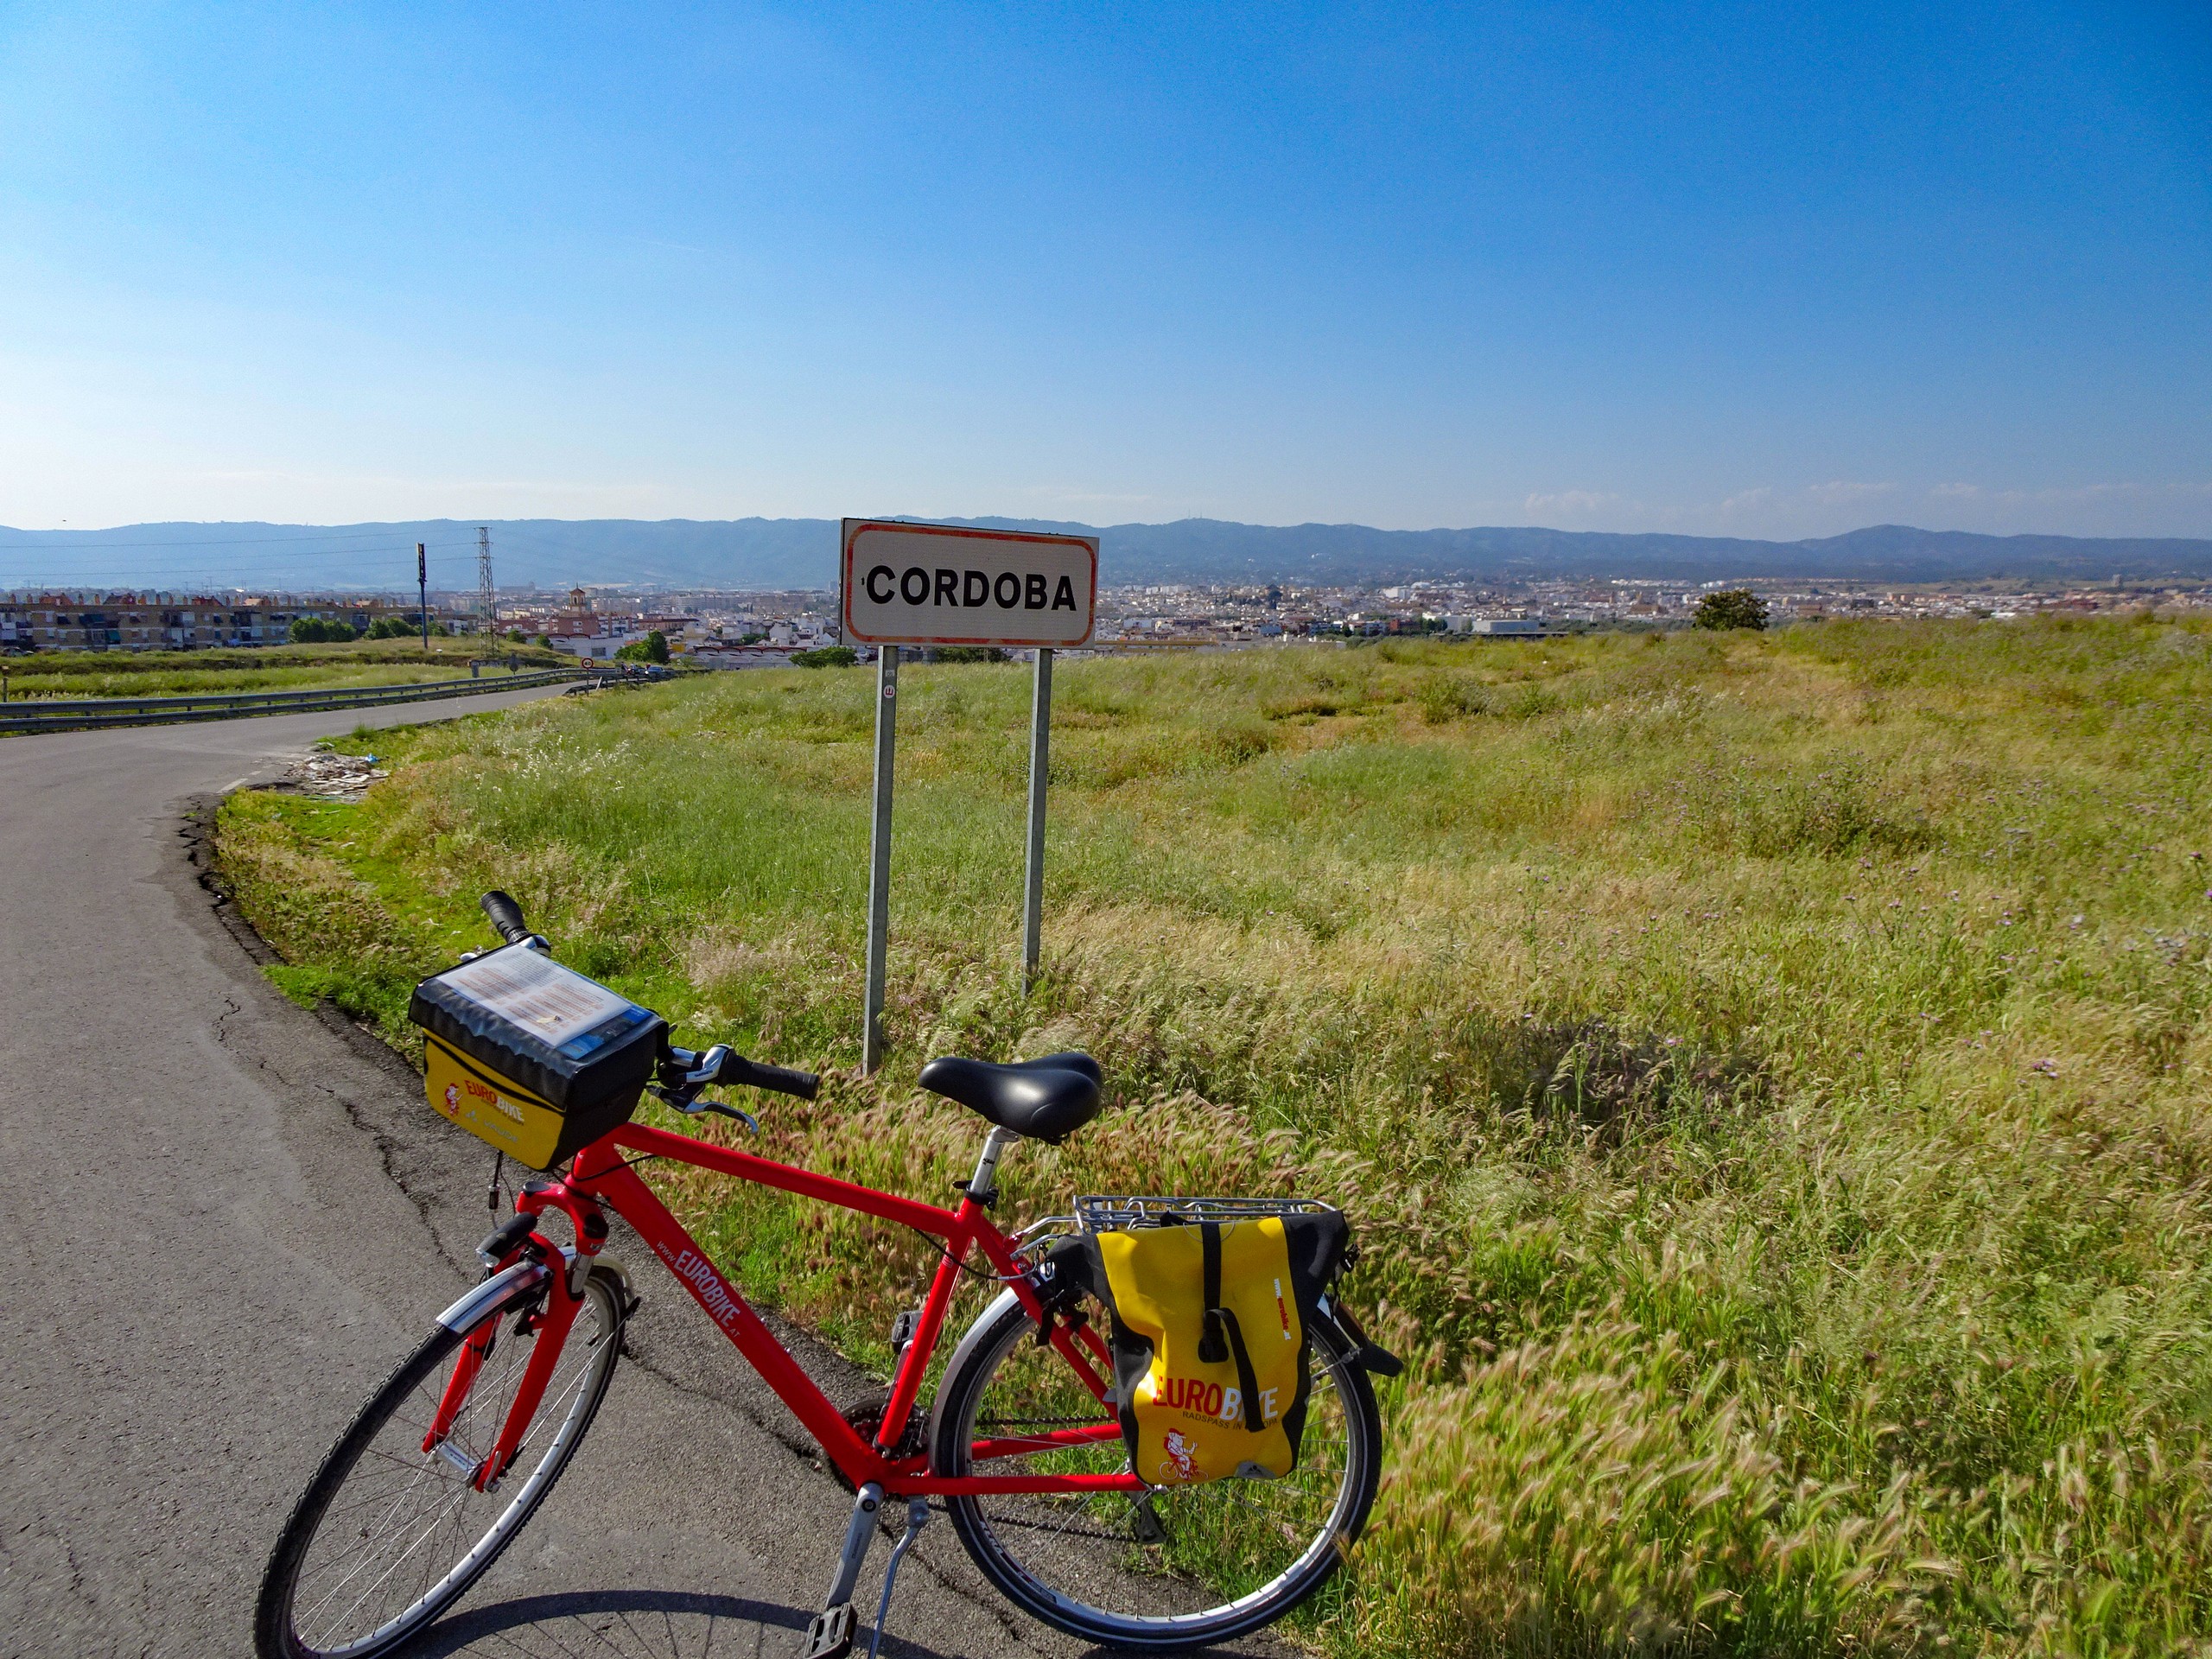 Bike parked near the roadsign of Cordoba, Spain